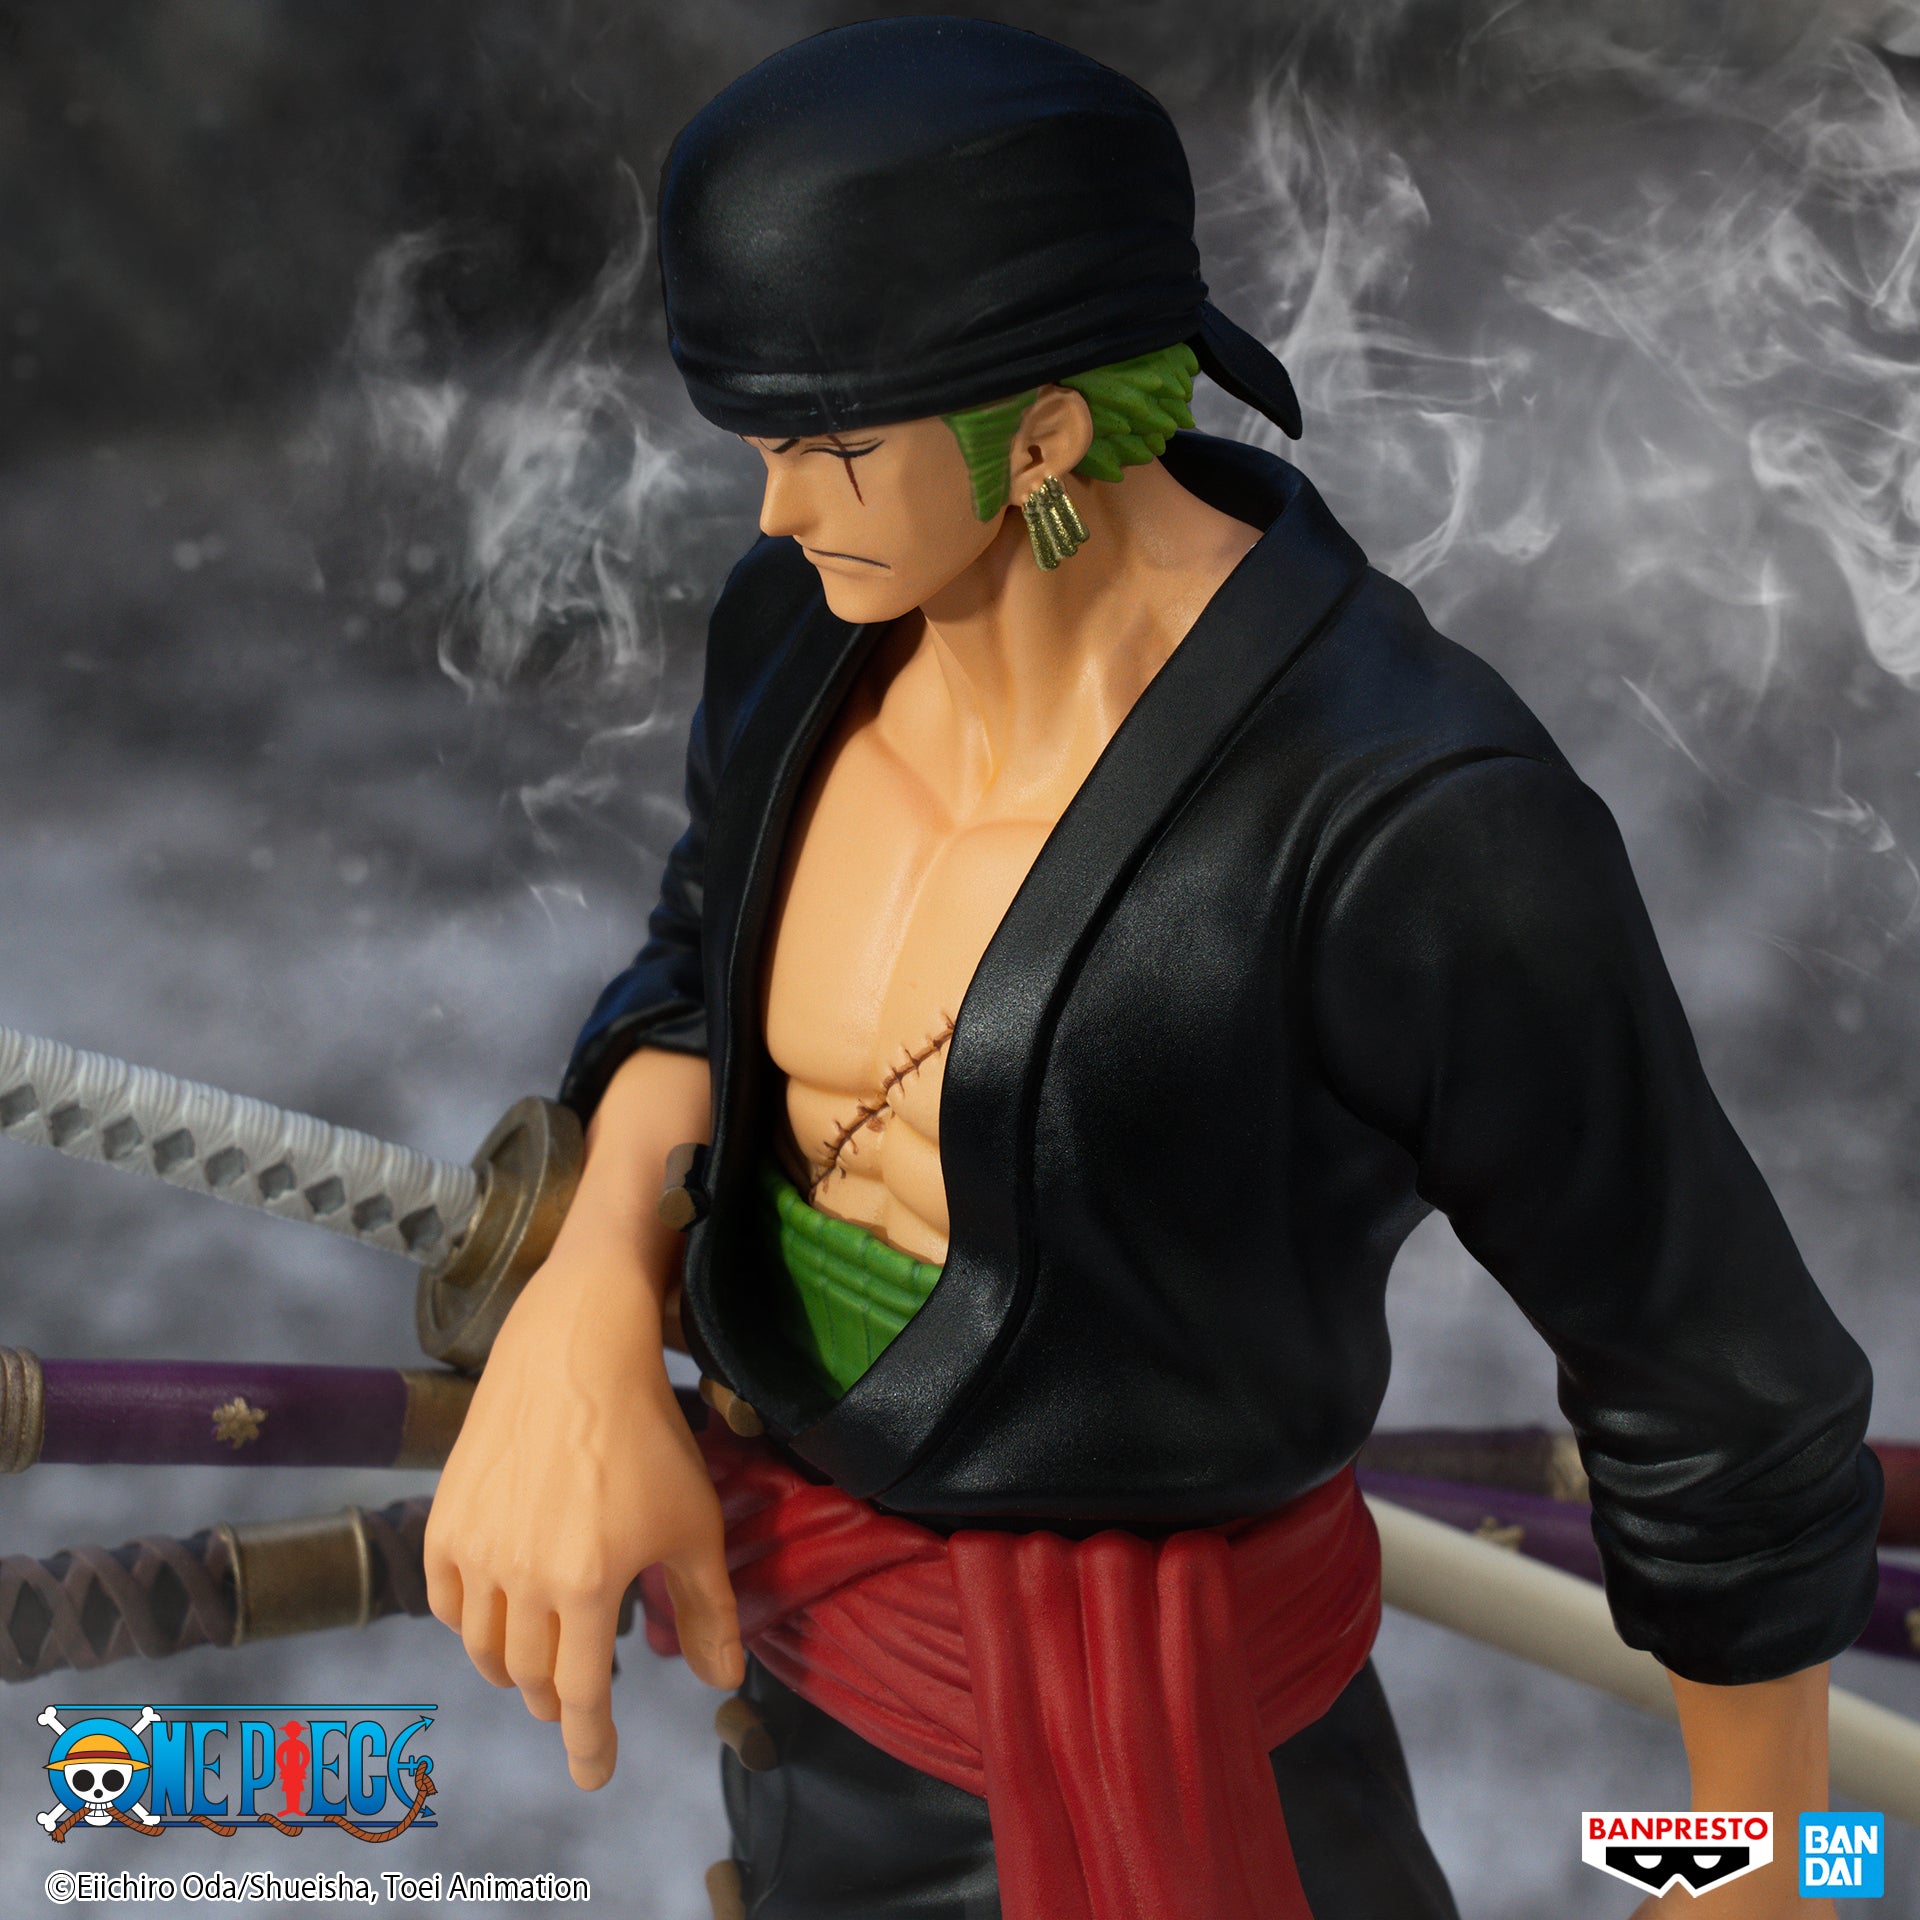 Banpresto The Shukko: One Piece - Roronoa Zoro